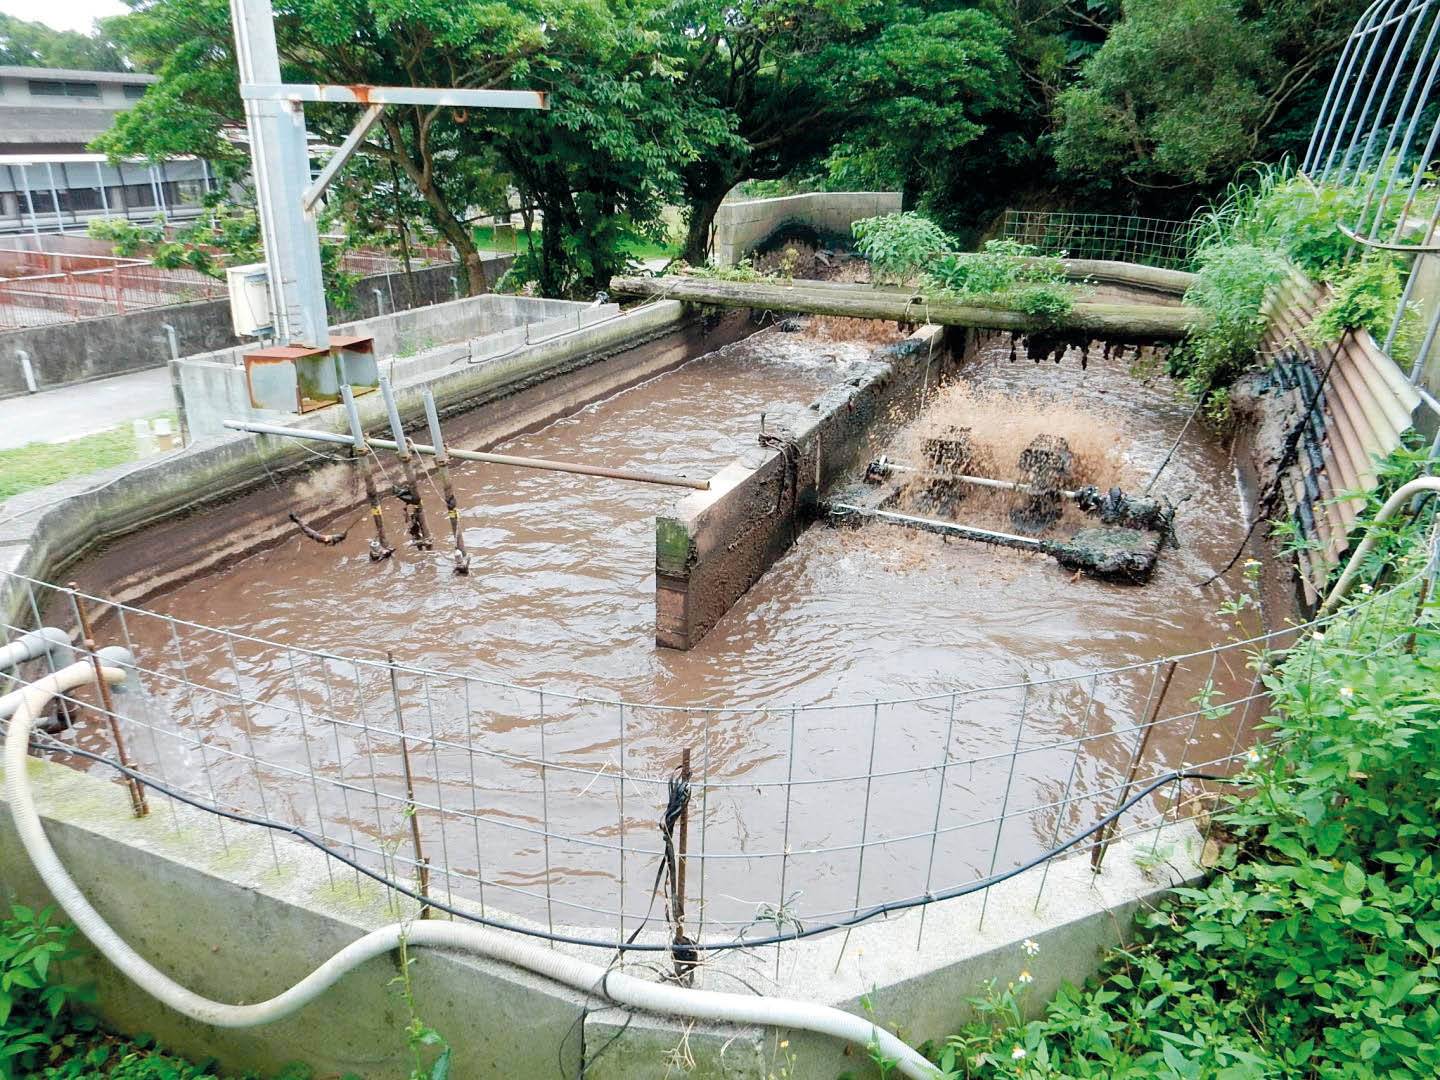 Japannese navorsers het ’n plan gemaak om afvalwater afkomstig van varkplase beter te behandel. FOTO TER ILLUSTRASIE: OKINAWA-INSTITUUT